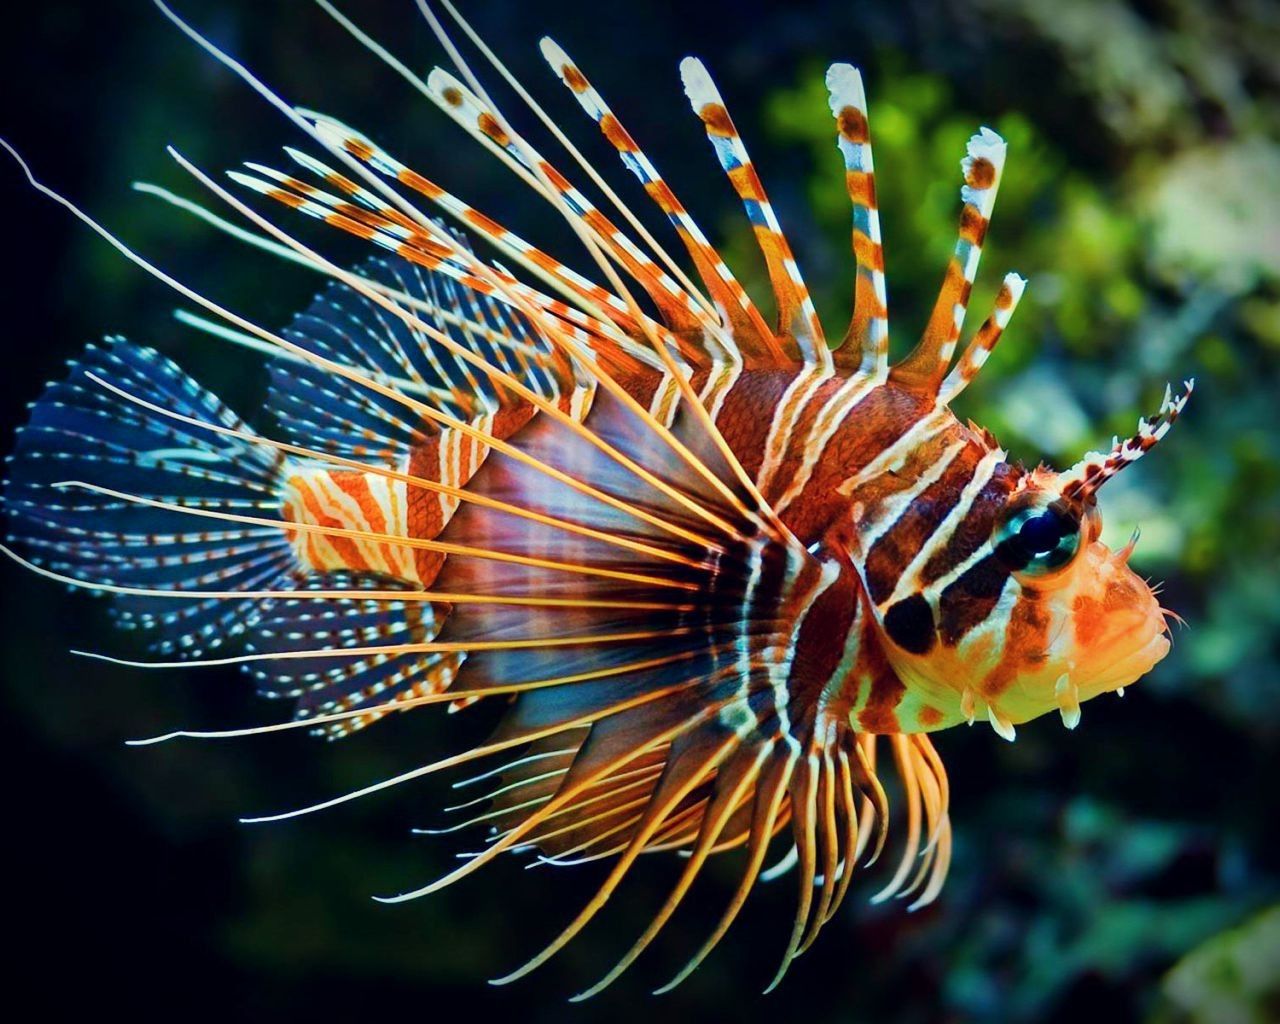 Unduh 820 Koleksi Gambar Hewan Laut Apa Yang Biasanya Menjadi Motif Baju Pantai Terbaik Gratis HD